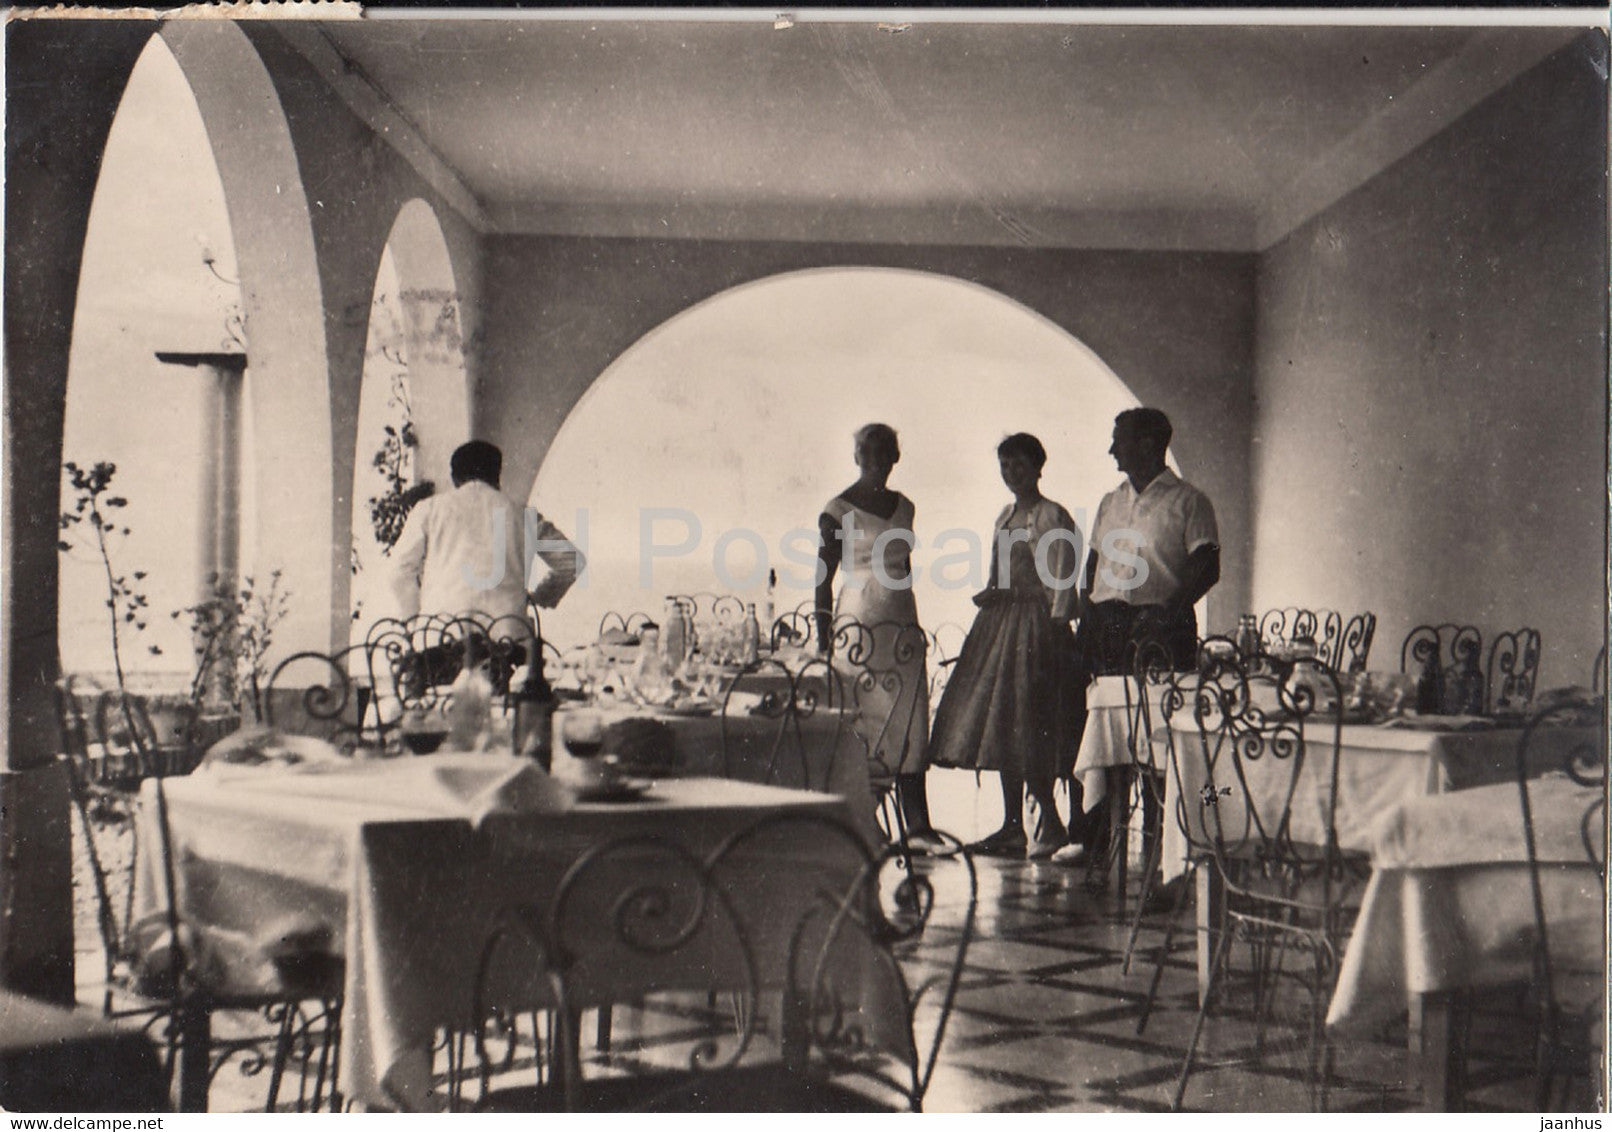 Hotel Biarritz - Situado en la playa entre Vinaroz y San Carlos de la Rapita - old postcard - 1958 - Spain - used - JH Postcards